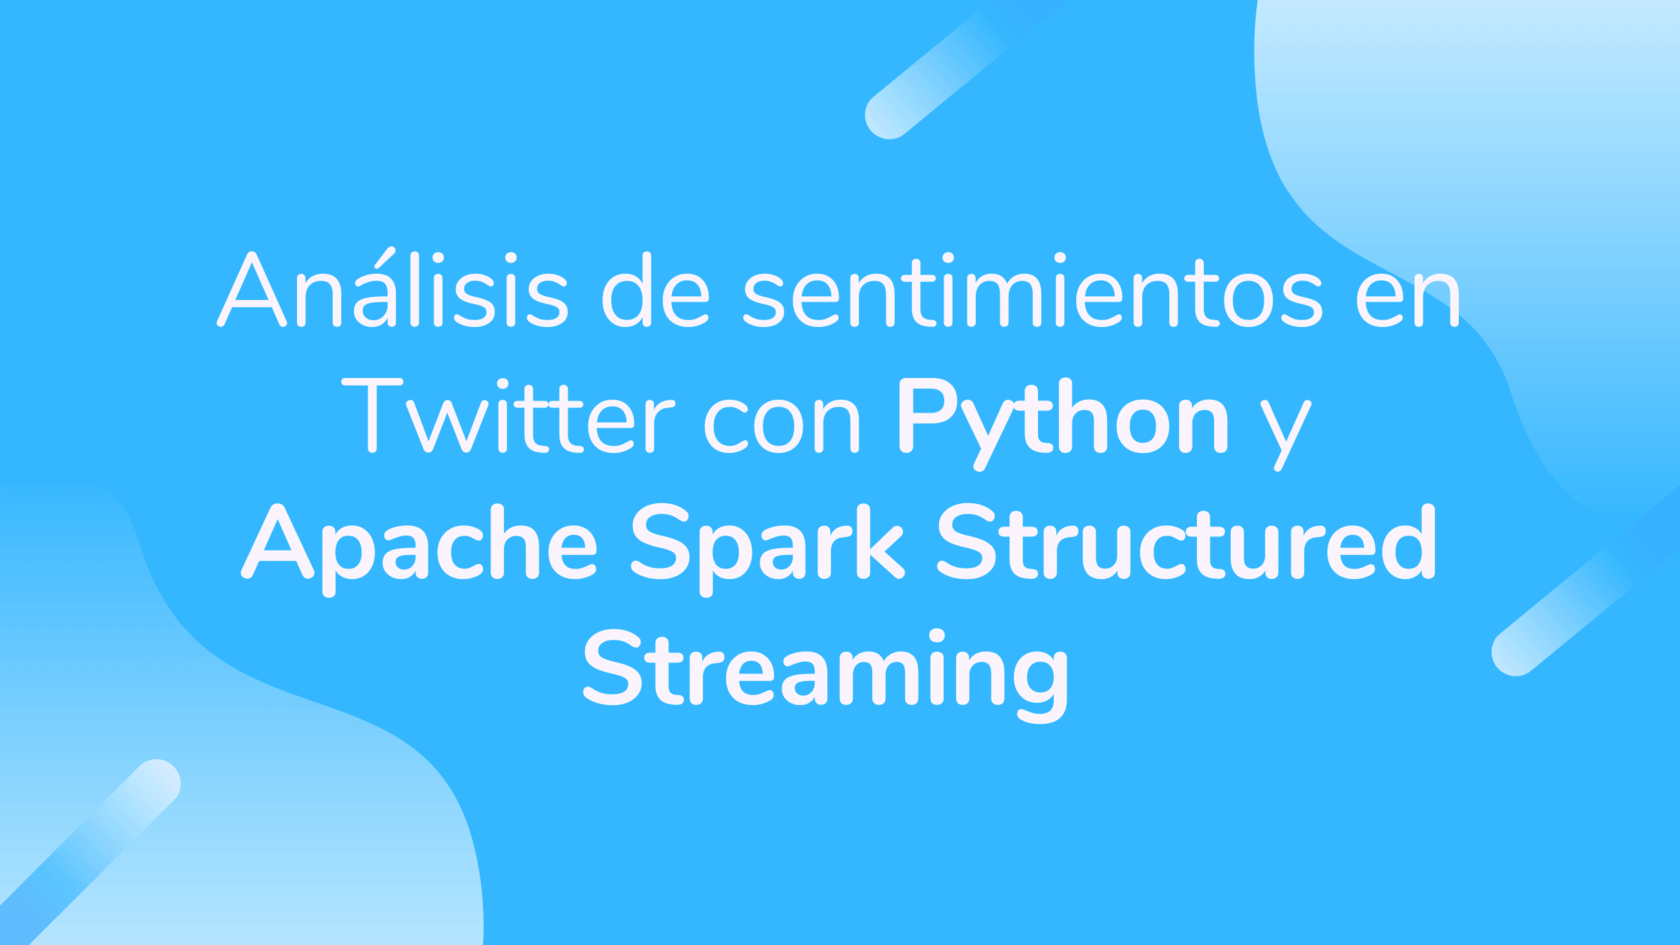 Análisis de sentimientos en Twitter con Python y Apache Spark Streaming